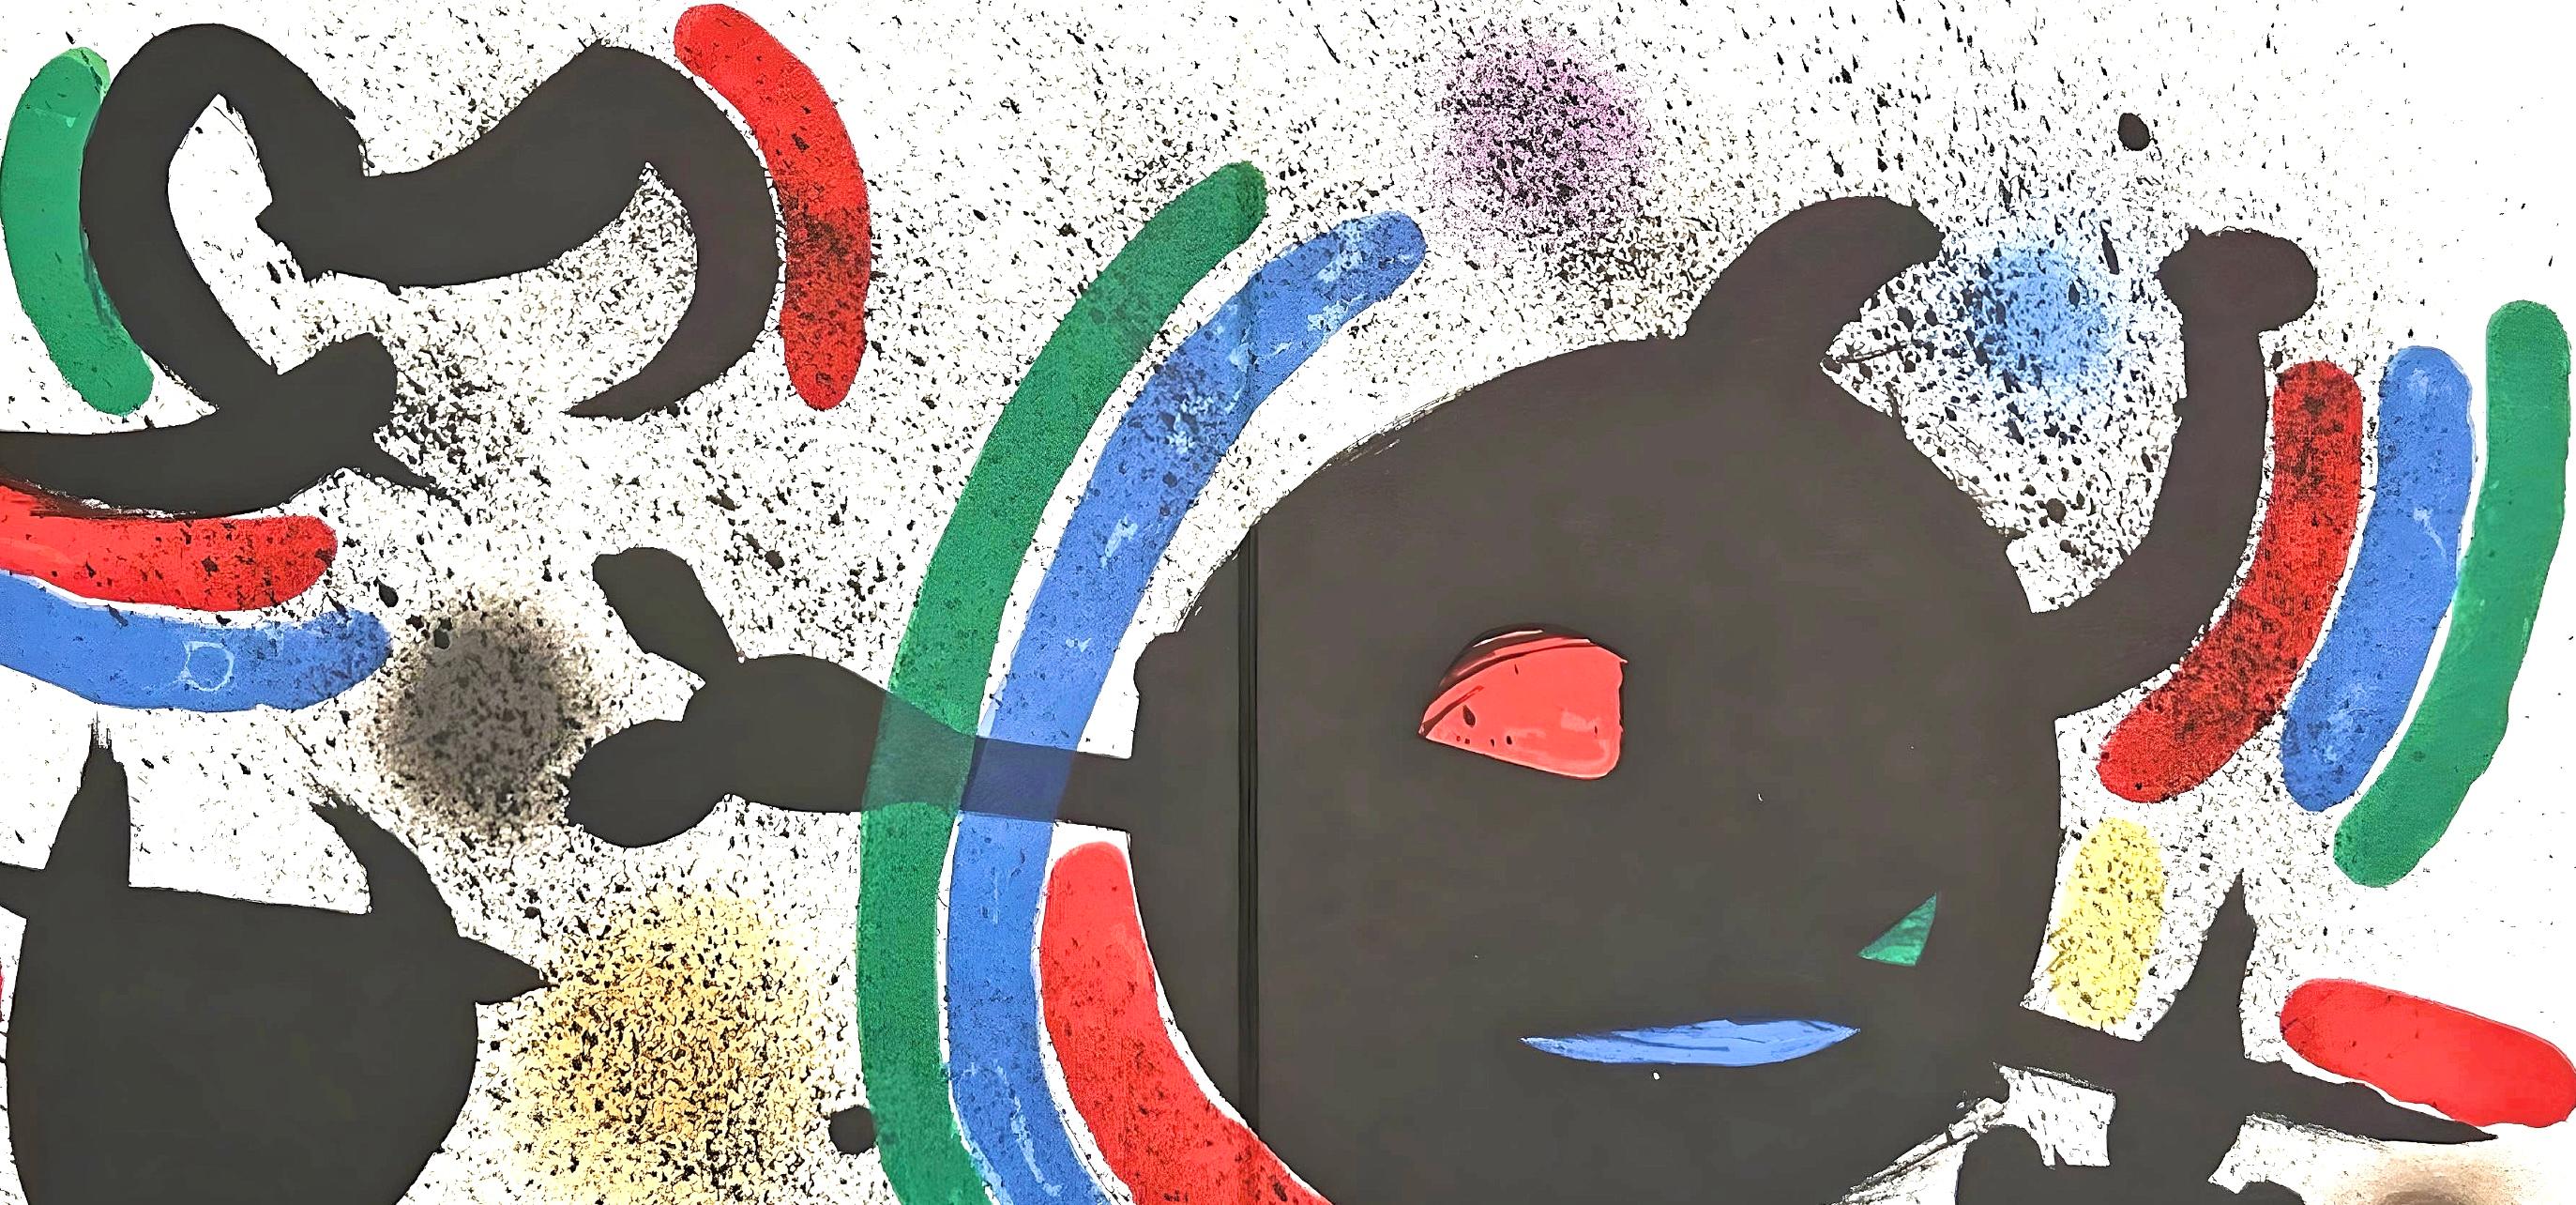 Miró, Litógrafia original X (Cramer 160; Mourlot 866), Litógrafo I (after) - Print by Joan Miró